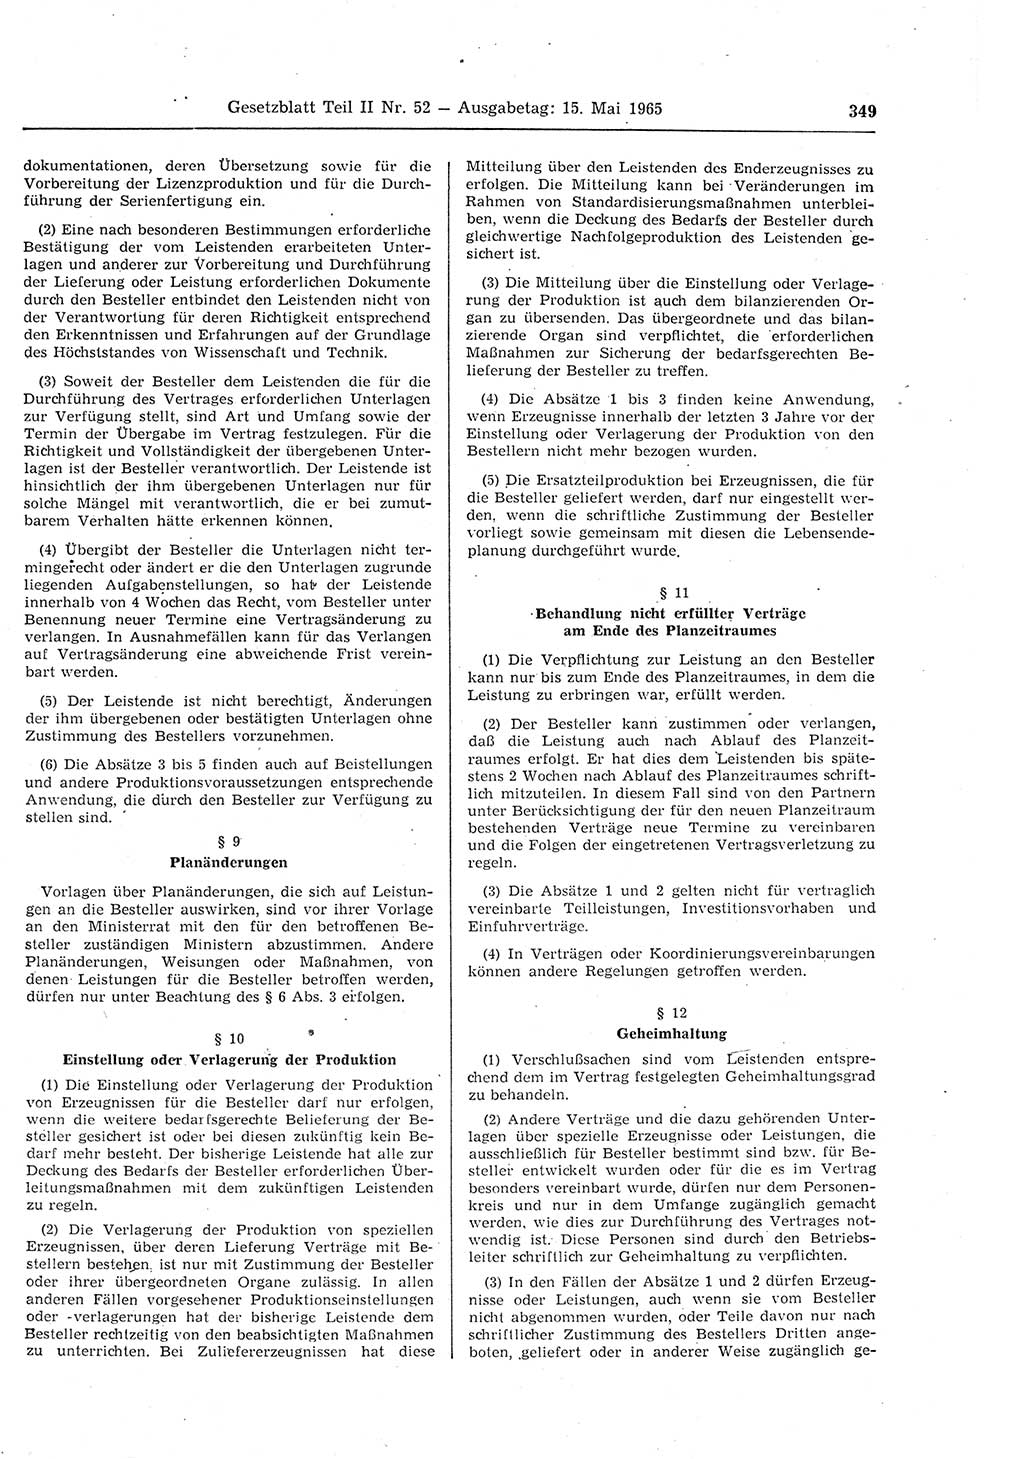 Gesetzblatt (GBl.) der Deutschen Demokratischen Republik (DDR) Teil ⅠⅠ 1965, Seite 349 (GBl. DDR ⅠⅠ 1965, S. 349)